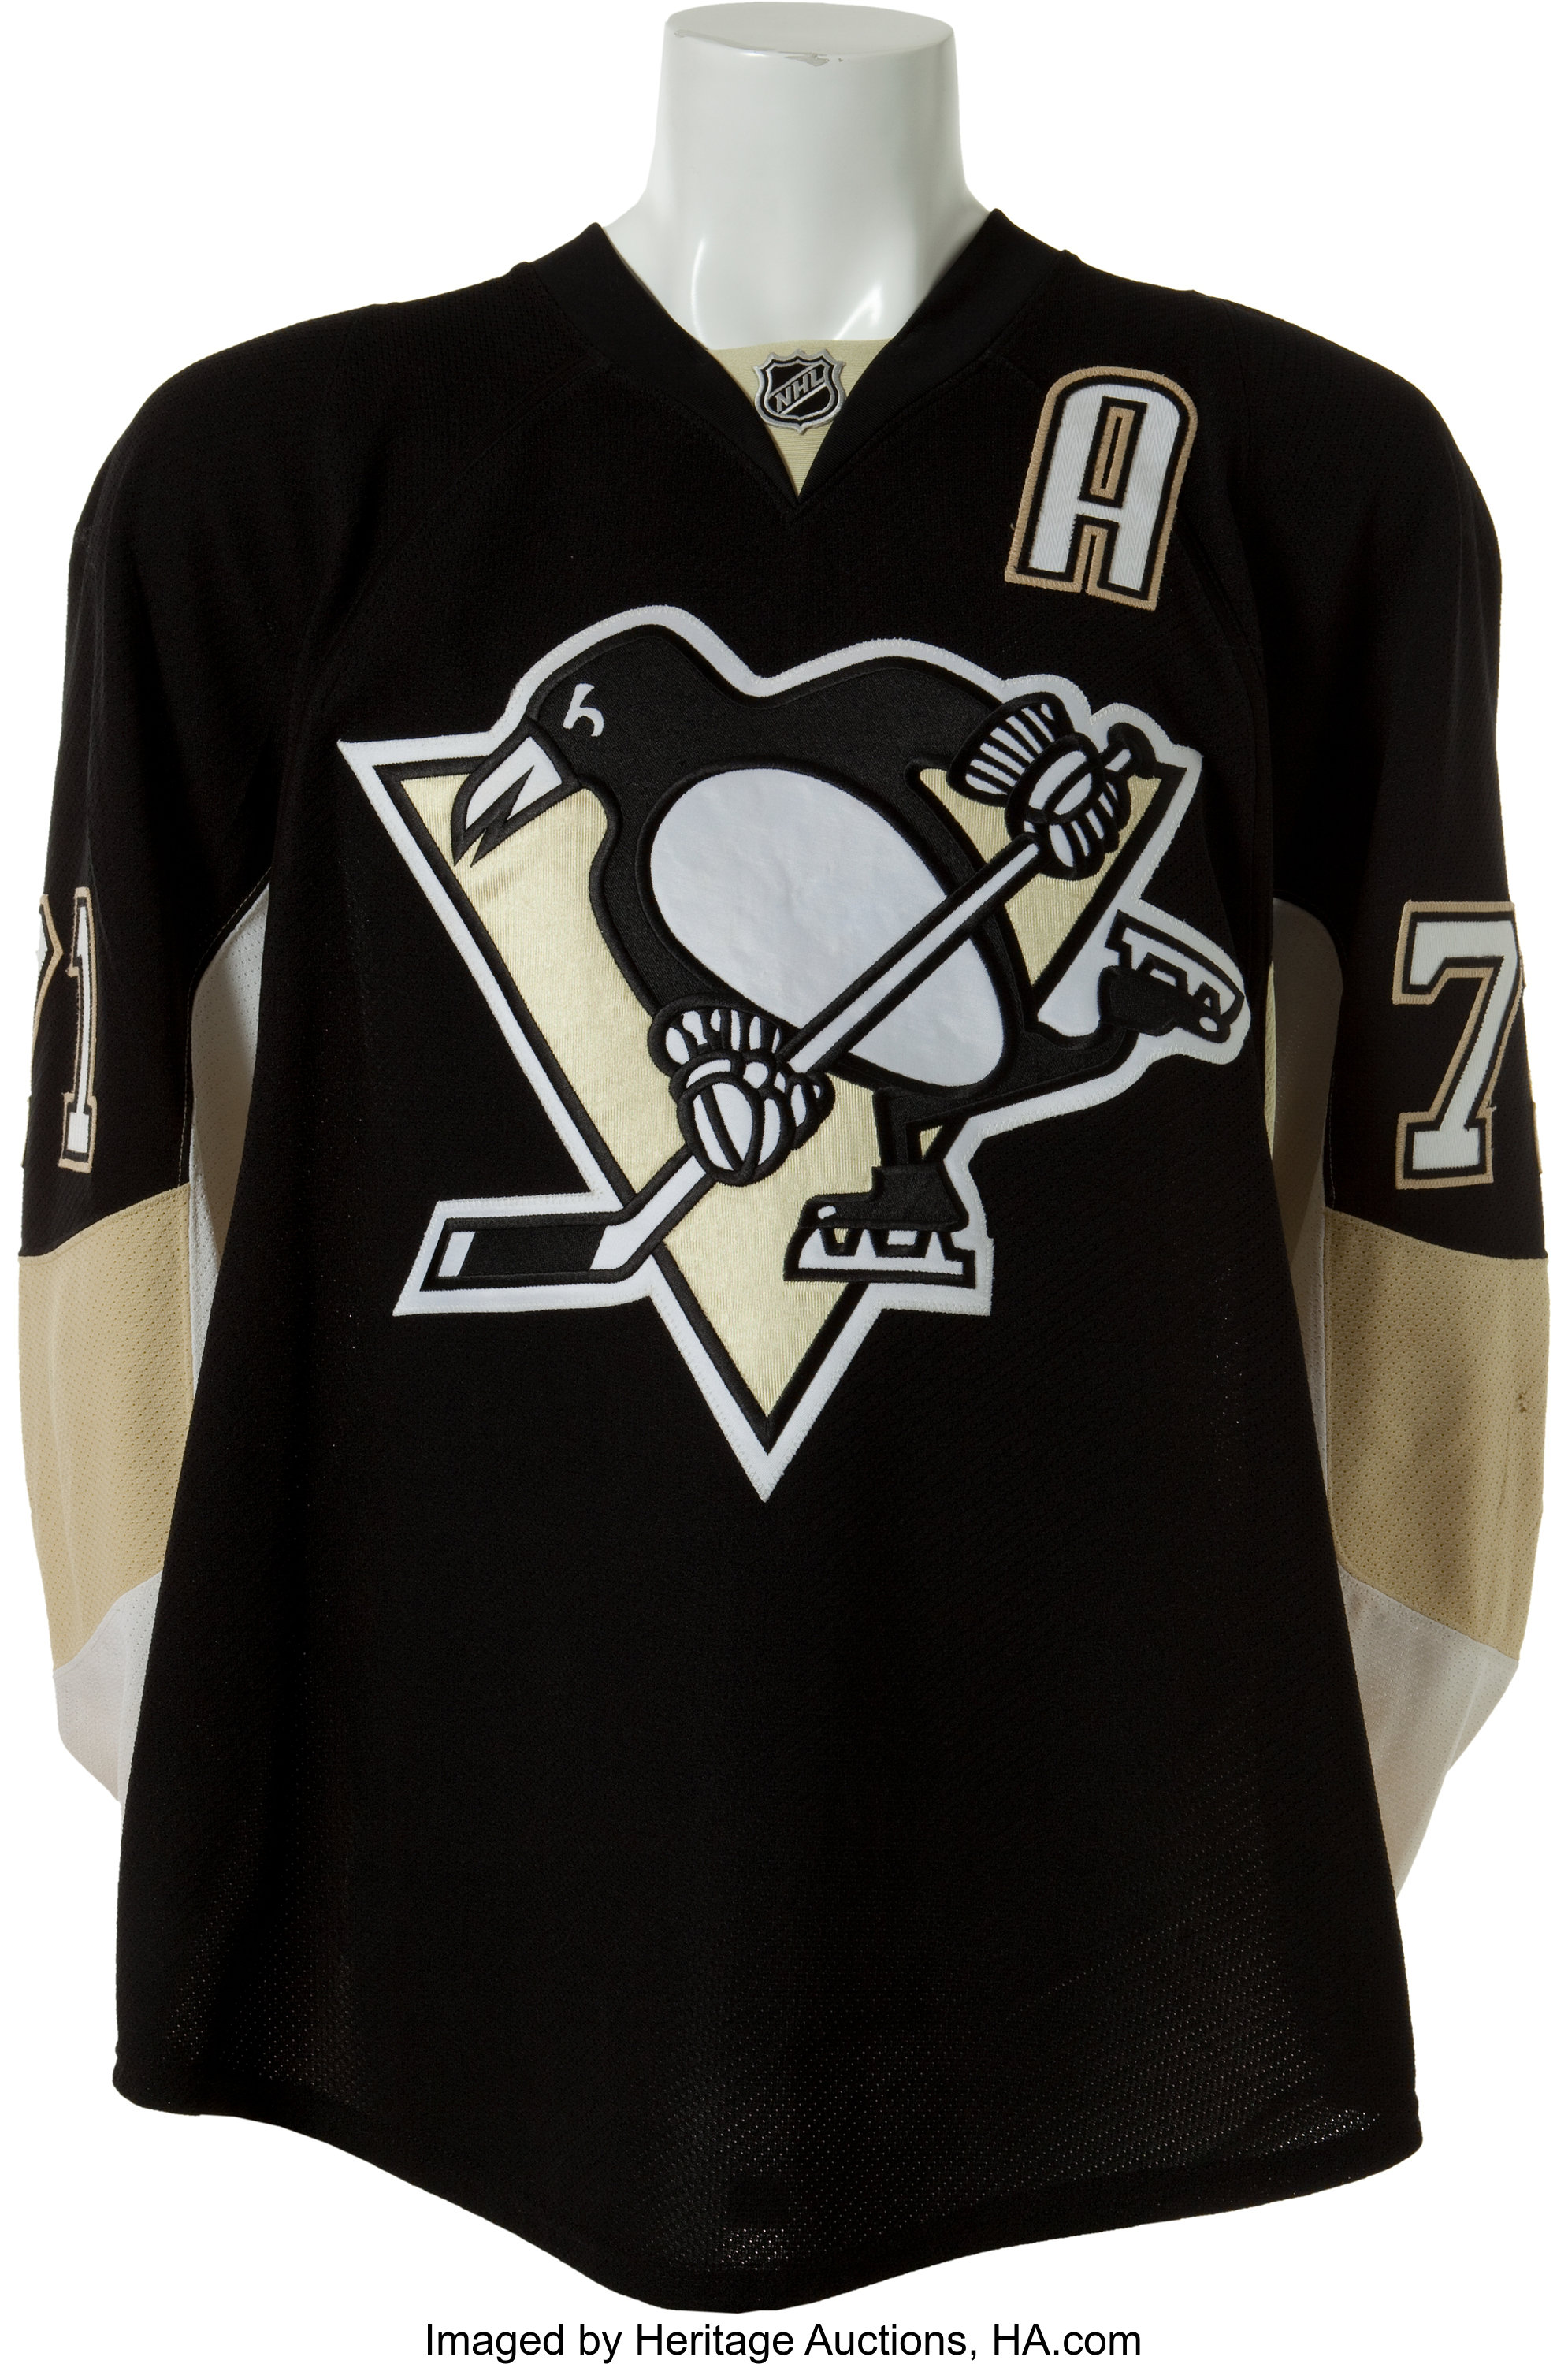 2010-11 Pittsburgh Penguins Game Worn Jerseys 